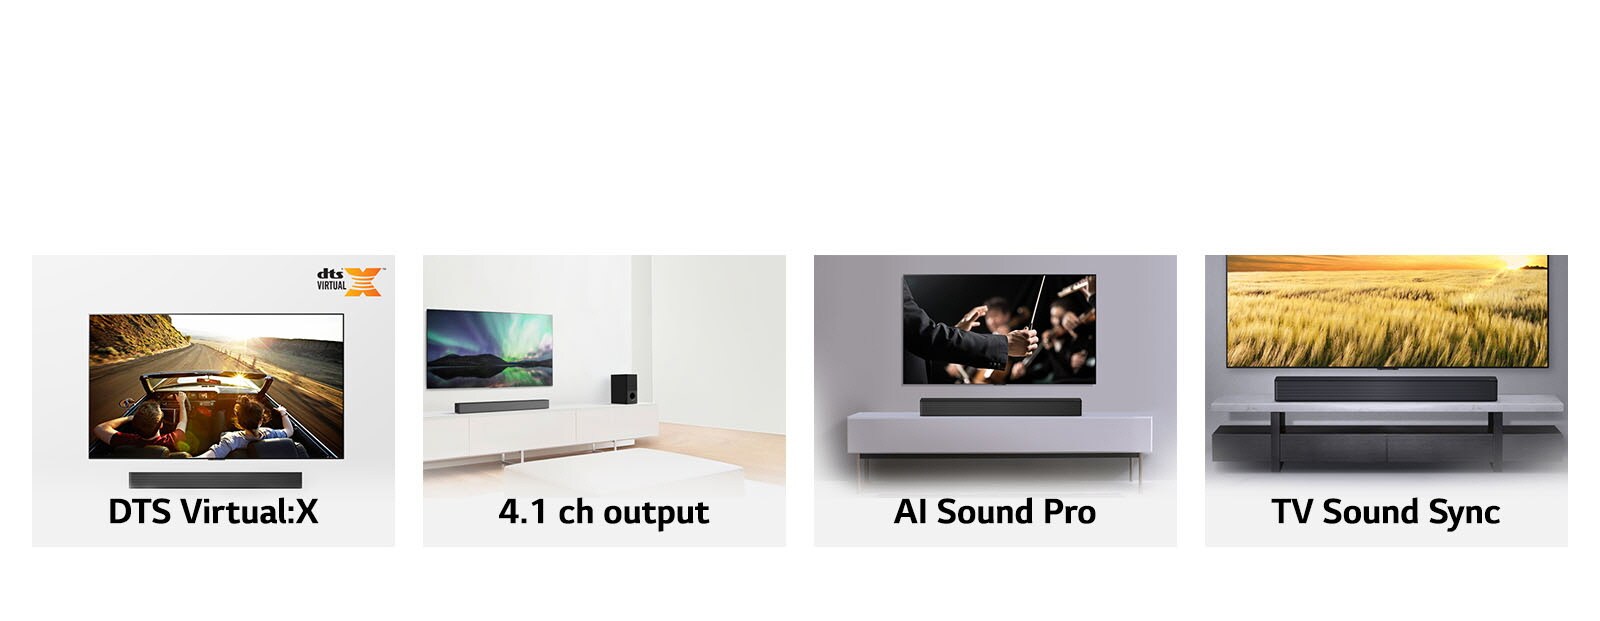 Ảnh ghép. Từ trái sang phải: bốn ảnh loa soundbar gồm ảnh có logo Meridian, ghép với TV, đặt trên giá, và chụp cận cảnh mặt trước.